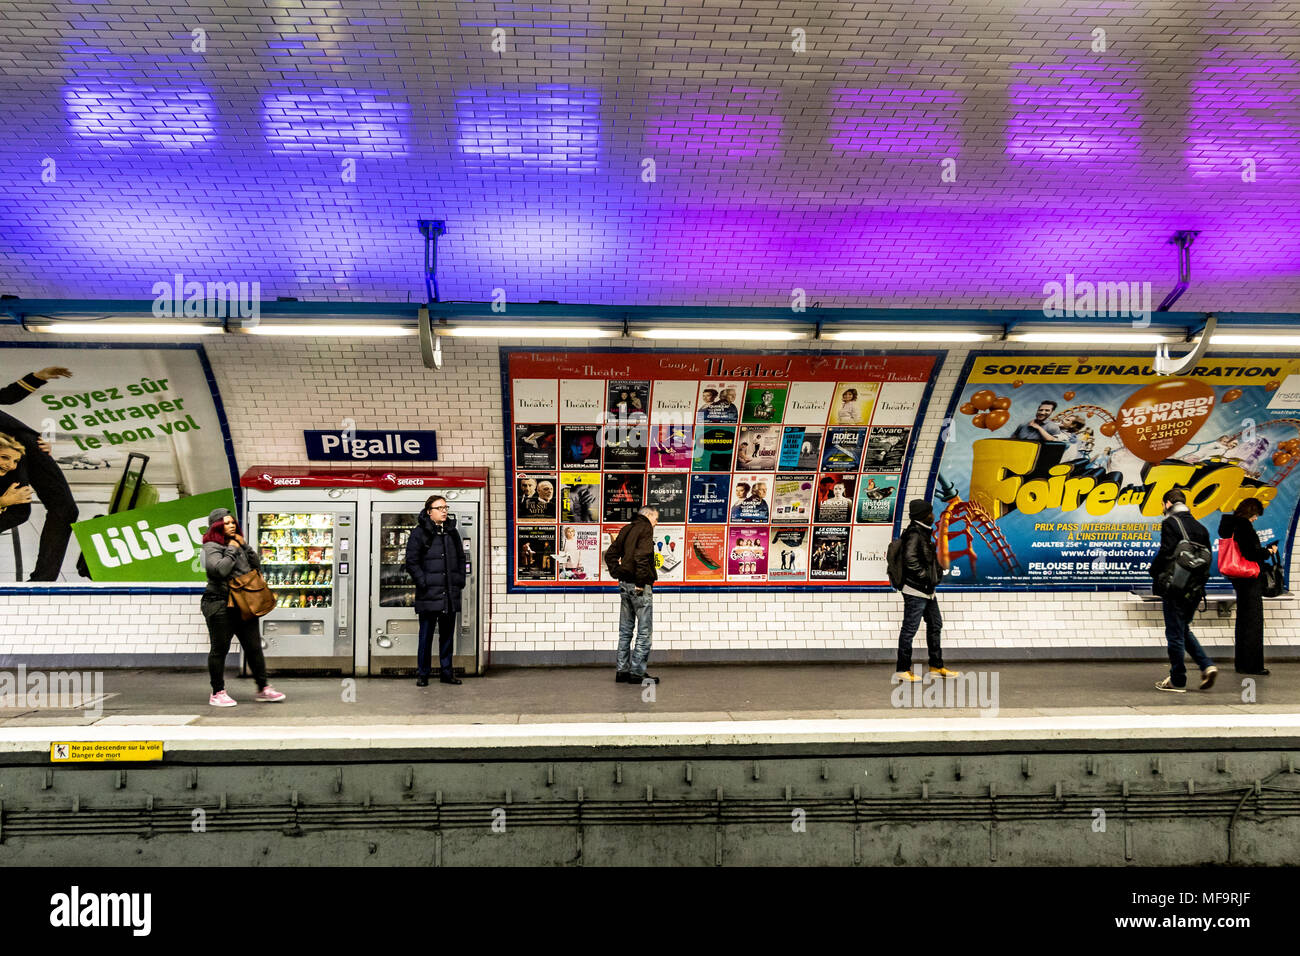 Les gens attendent un train sur la station de métro Pigalle sur le réseau de métro Paris, qui dessert les lignes 2 et 12 du métro Paris, Pigalle, Paris, France Banque D'Images